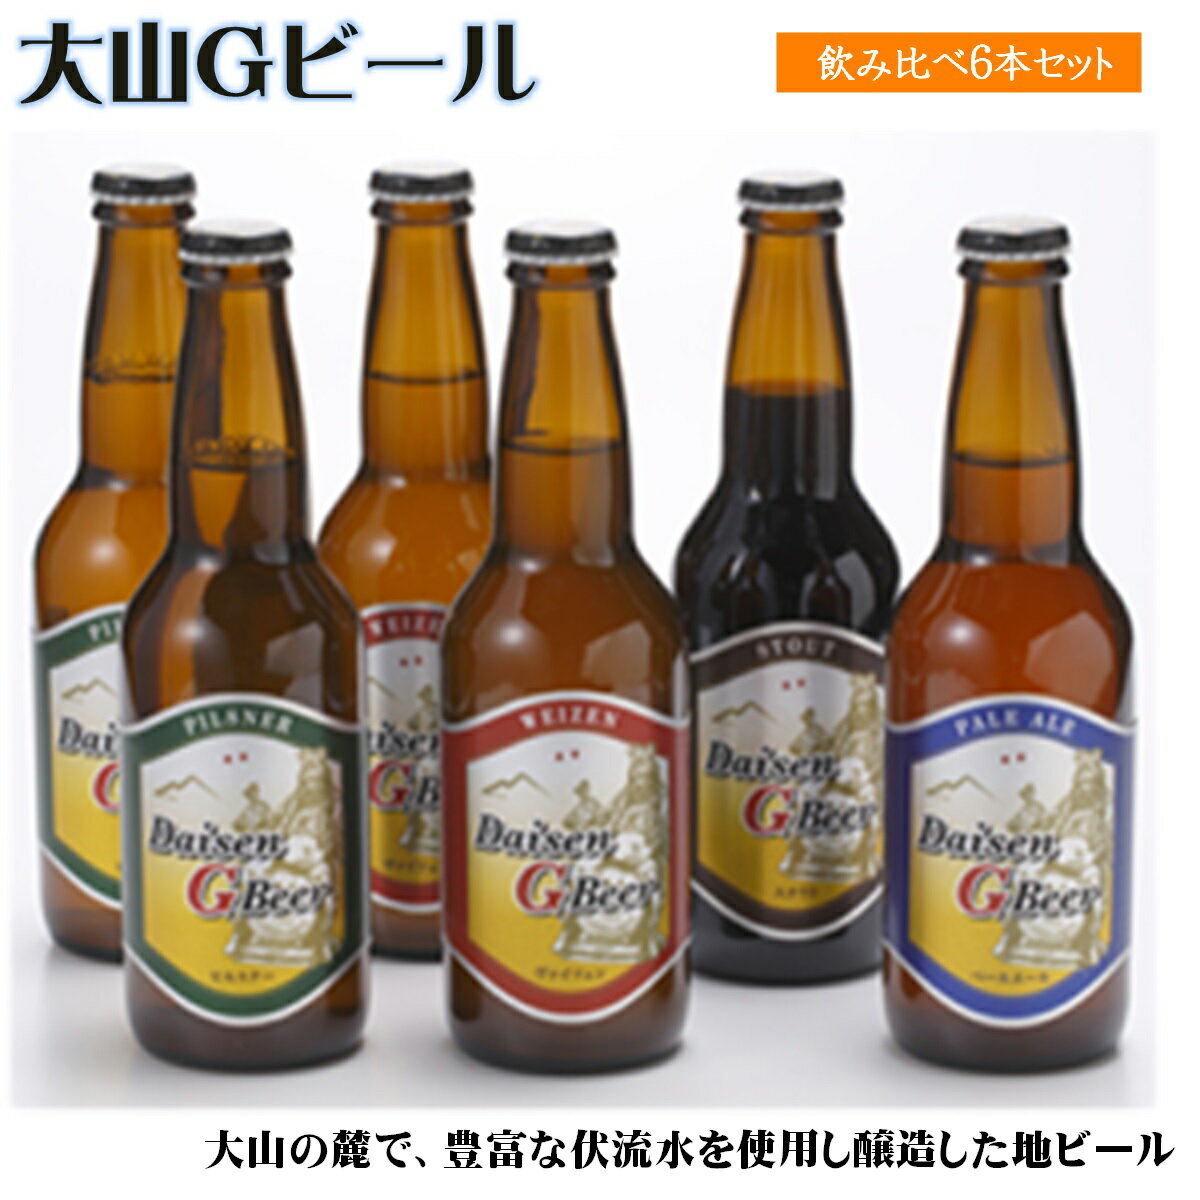 大山Gビール飲み比べ6本セット[22-010-010]地ビール 10000円 提供:久米櫻酒造有限会社